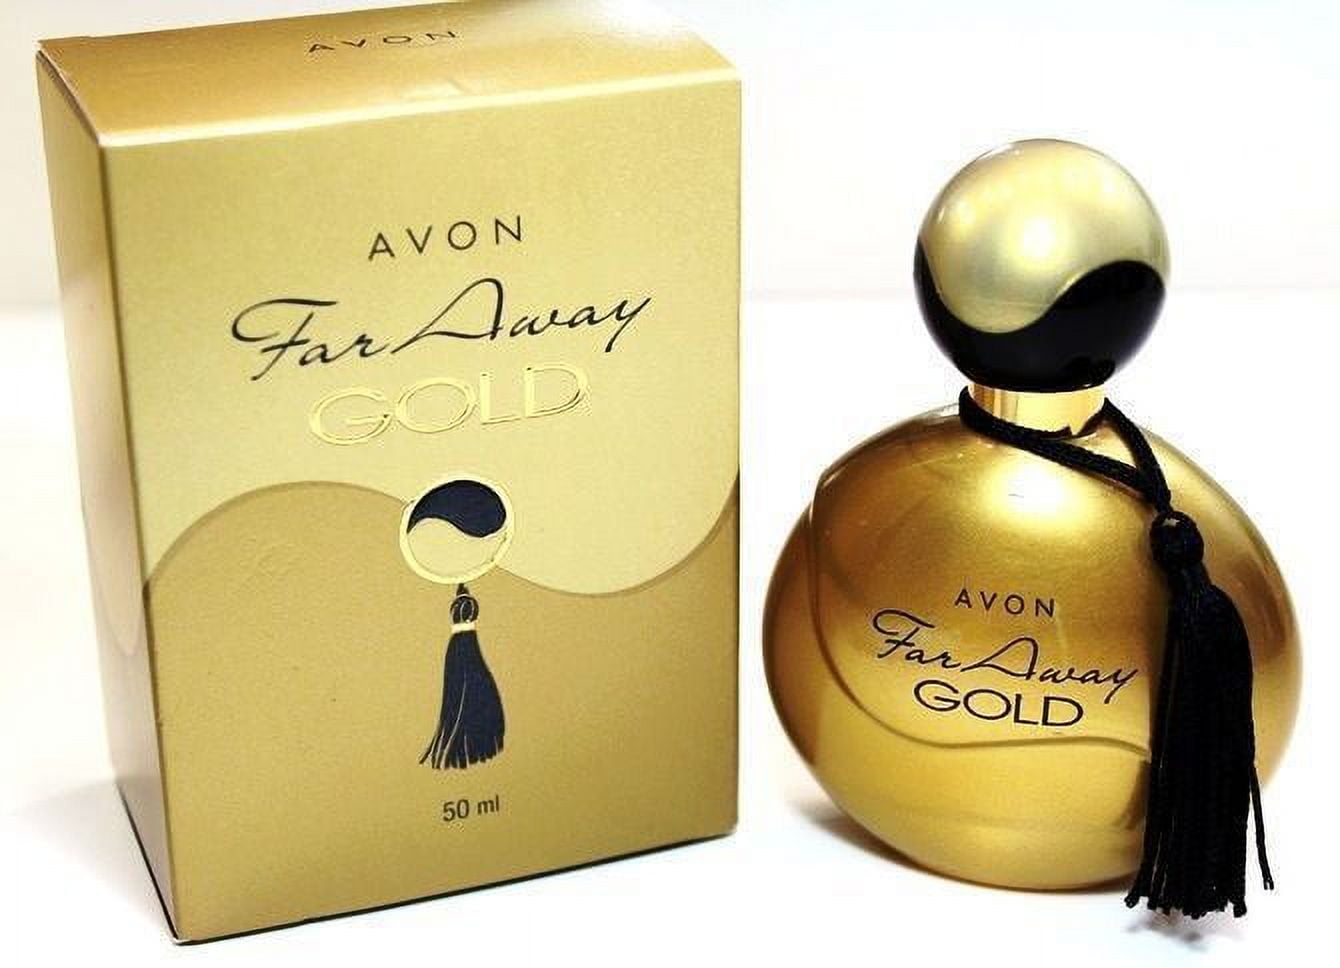 Avon gold